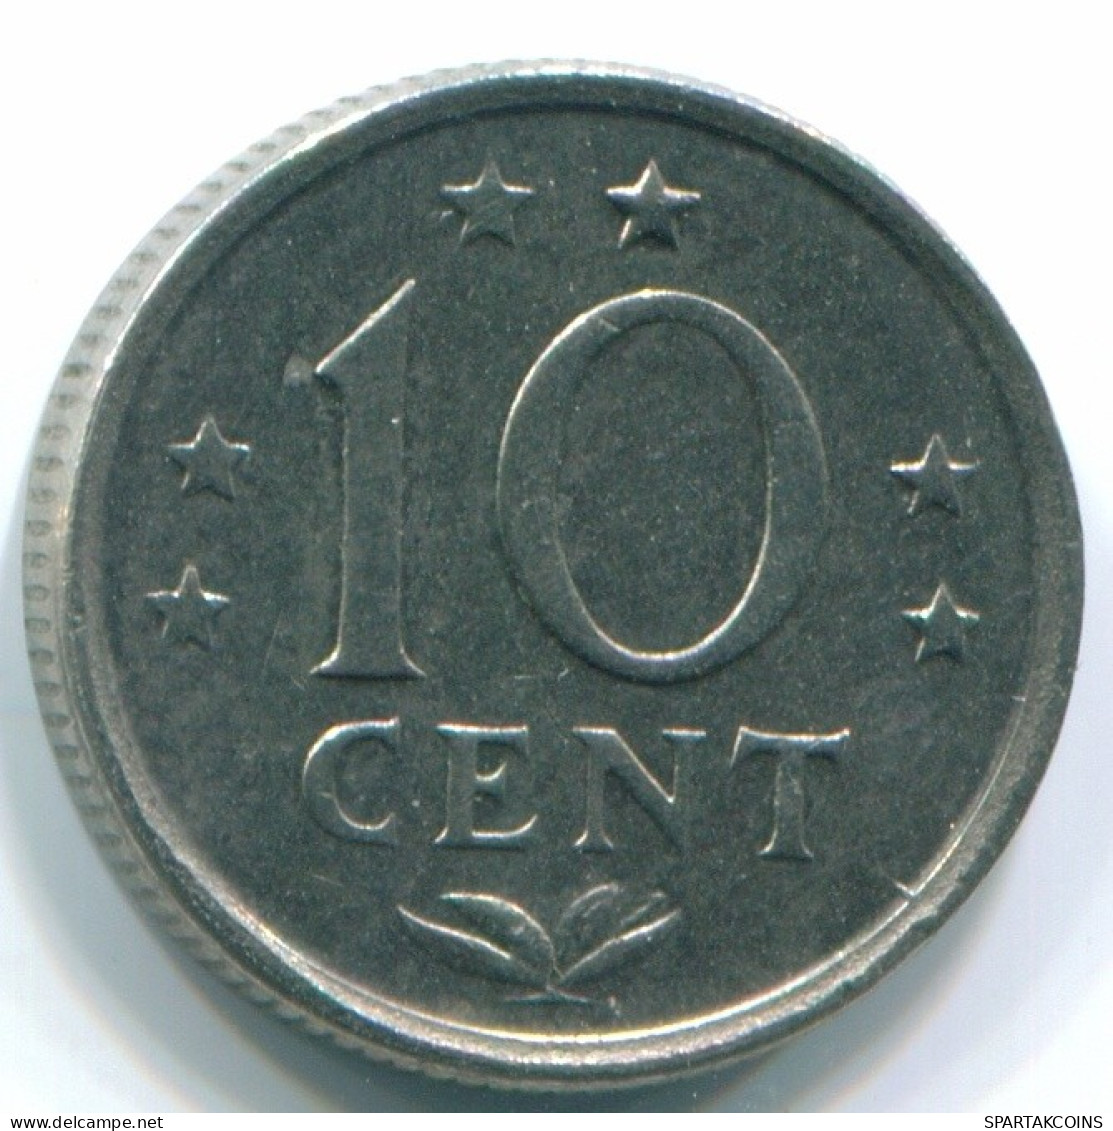 10 CENTS 1970 NIEDERLÄNDISCHE ANTILLEN Nickel Koloniale Münze #S13341.D.A - Antille Olandesi